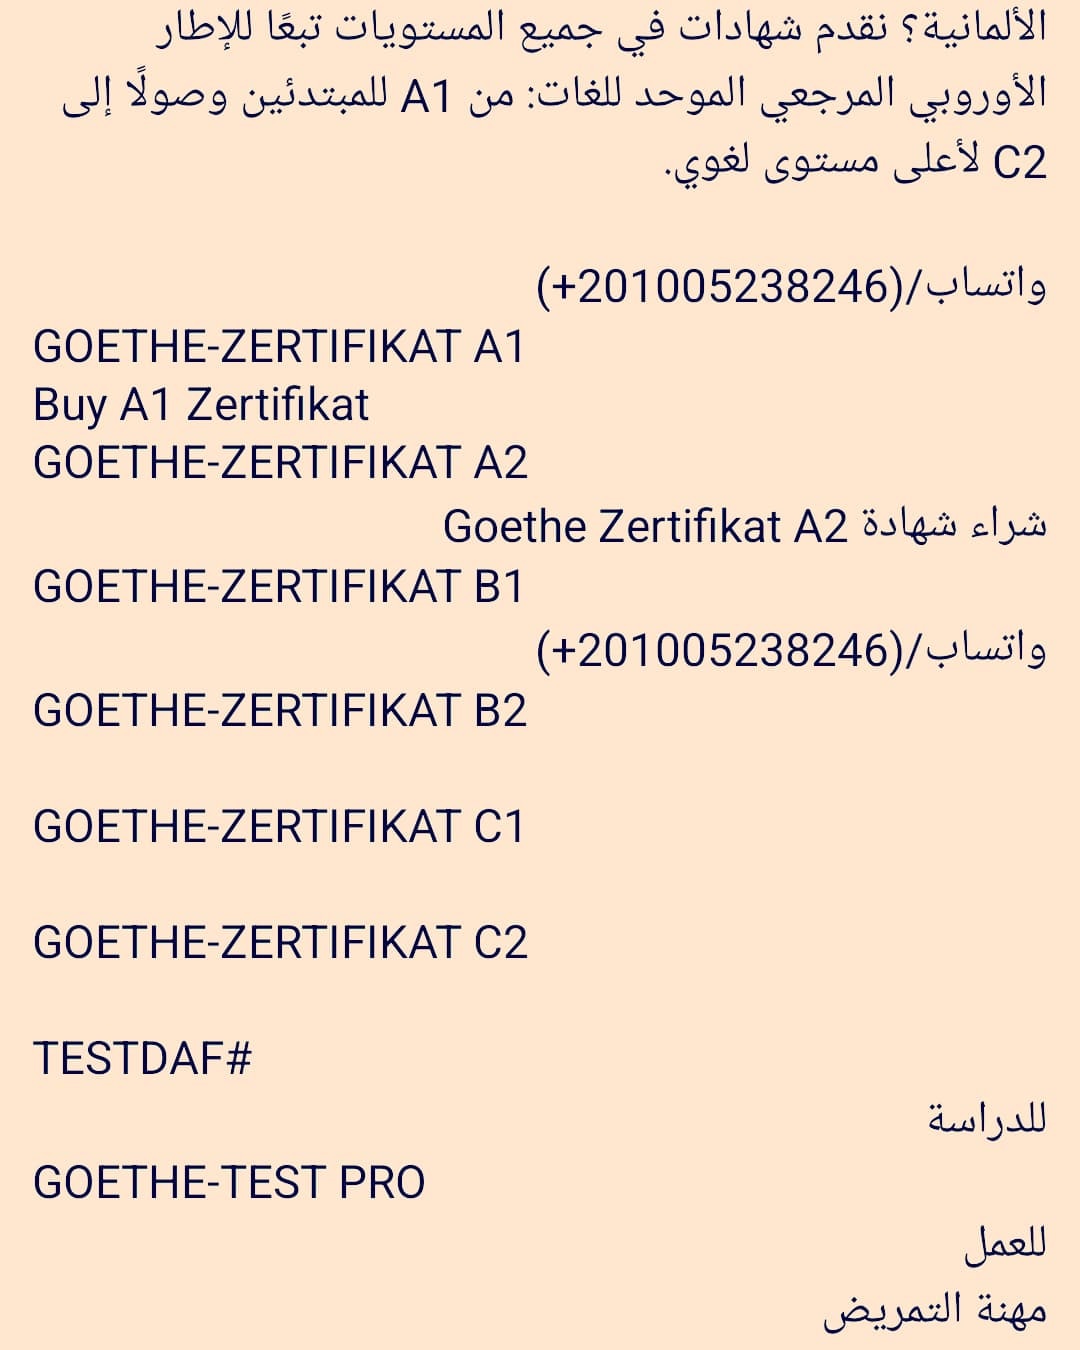 Buy Goethe A1 Zertifikat in Germany +201005238246